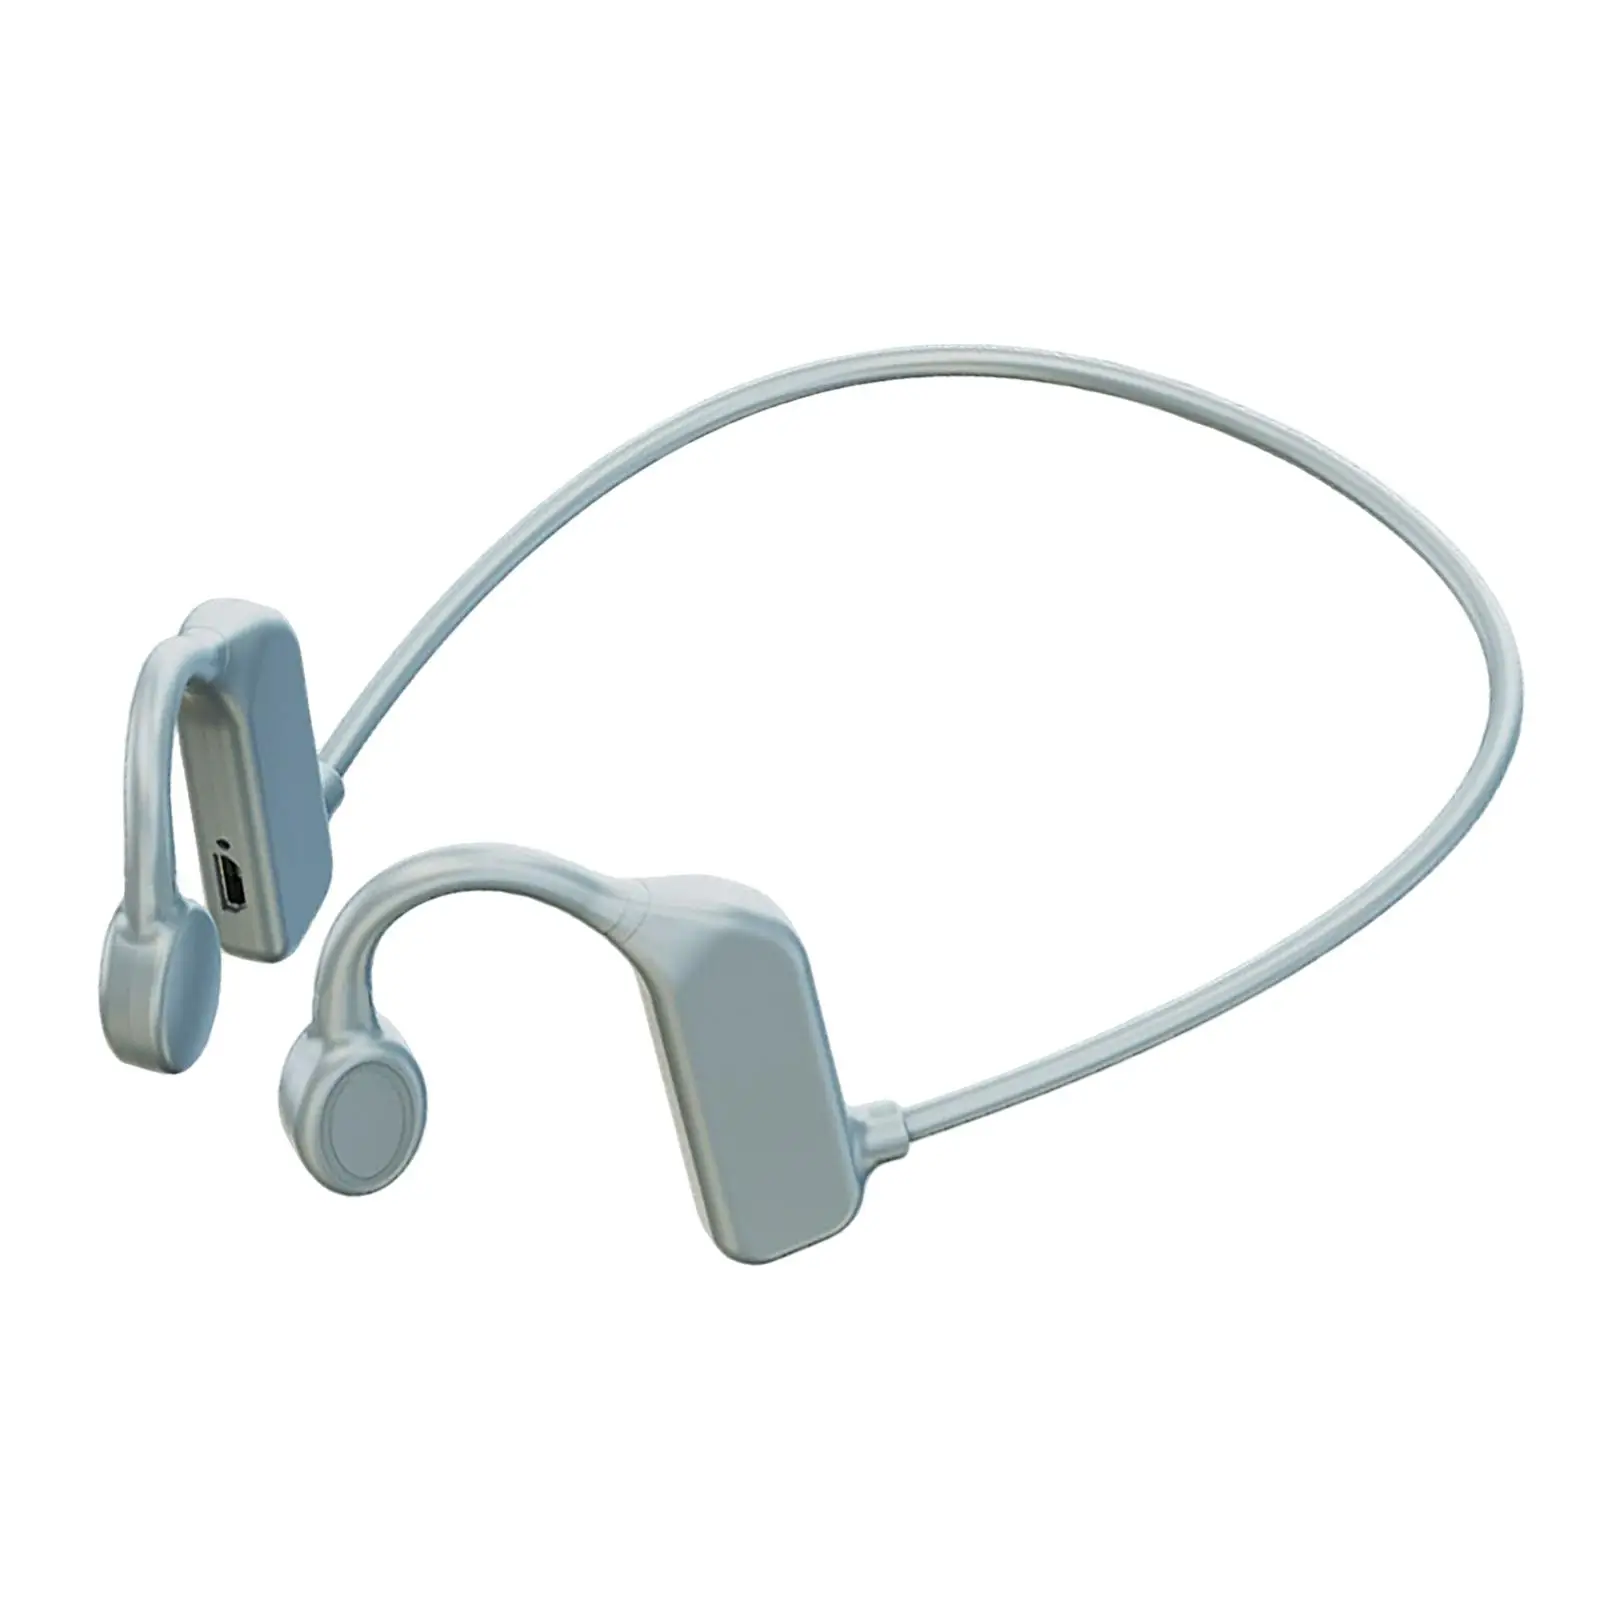 Open Ear Headphones Bluetooth Earphones Comfortable with Mic